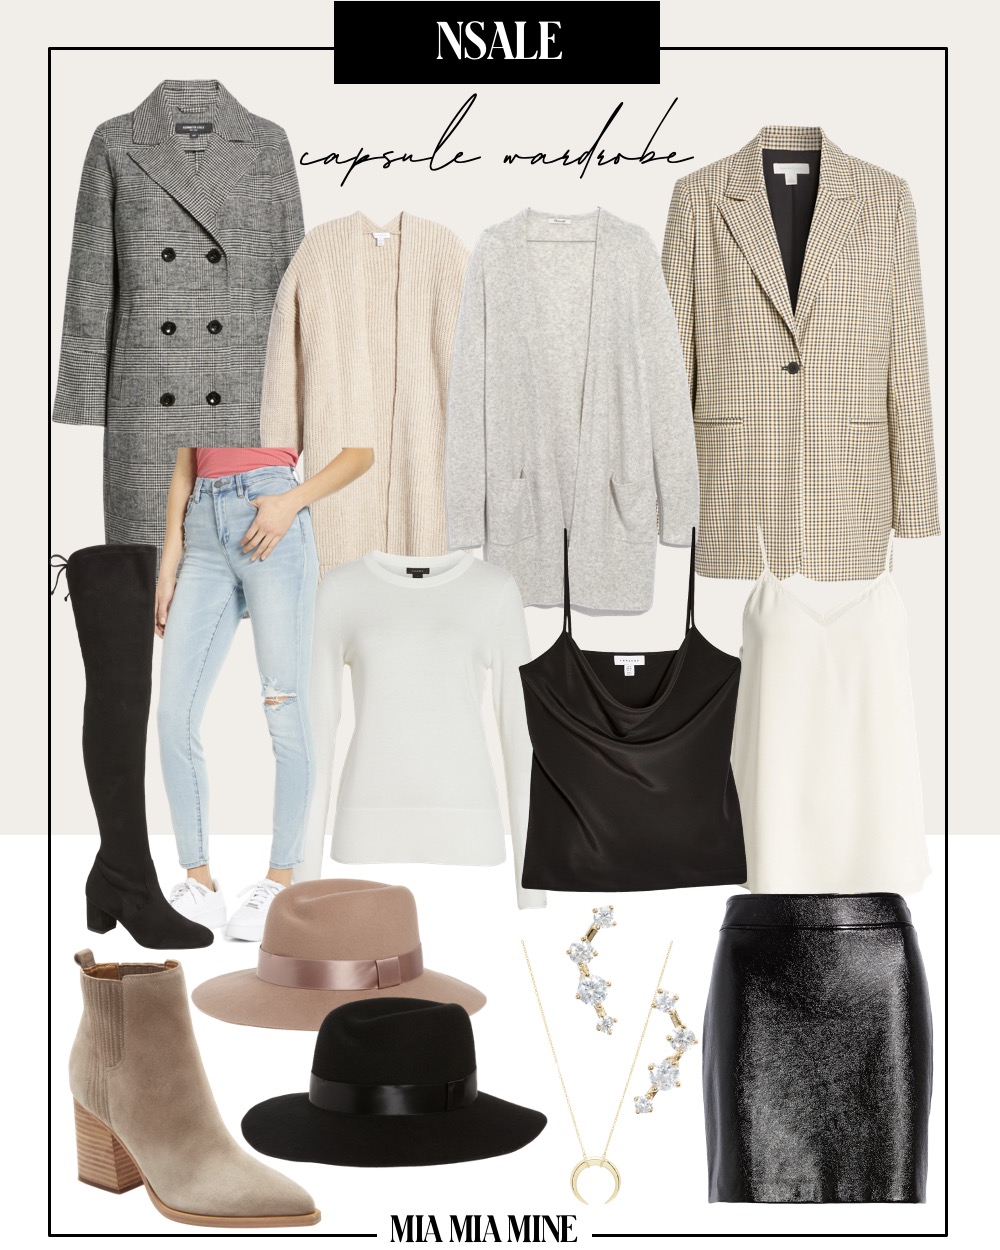 nsale capsule wardrobe collage by fashion blogger mia mia mine